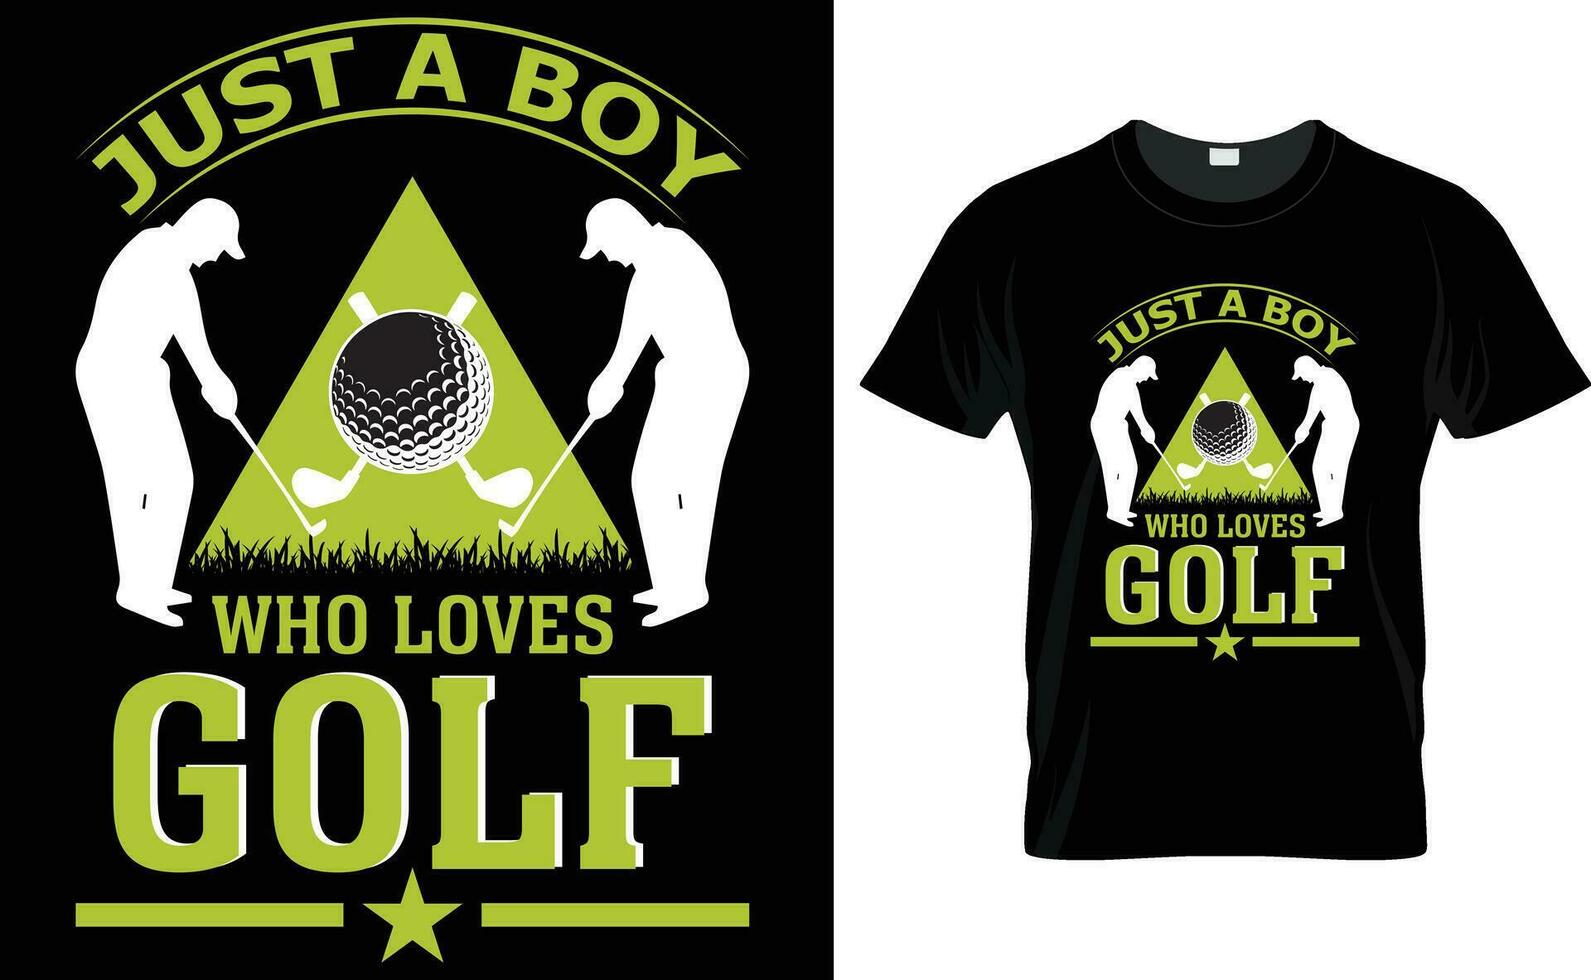 gerade ein Junge Wer liebt Golf t Hemd Design, Golf t Hemd Design, Typografie Golf t Hemd Design, Jahrgang Golf t Hemd Design, retro Golf T-Shirt Design, Vektor Illustrator.